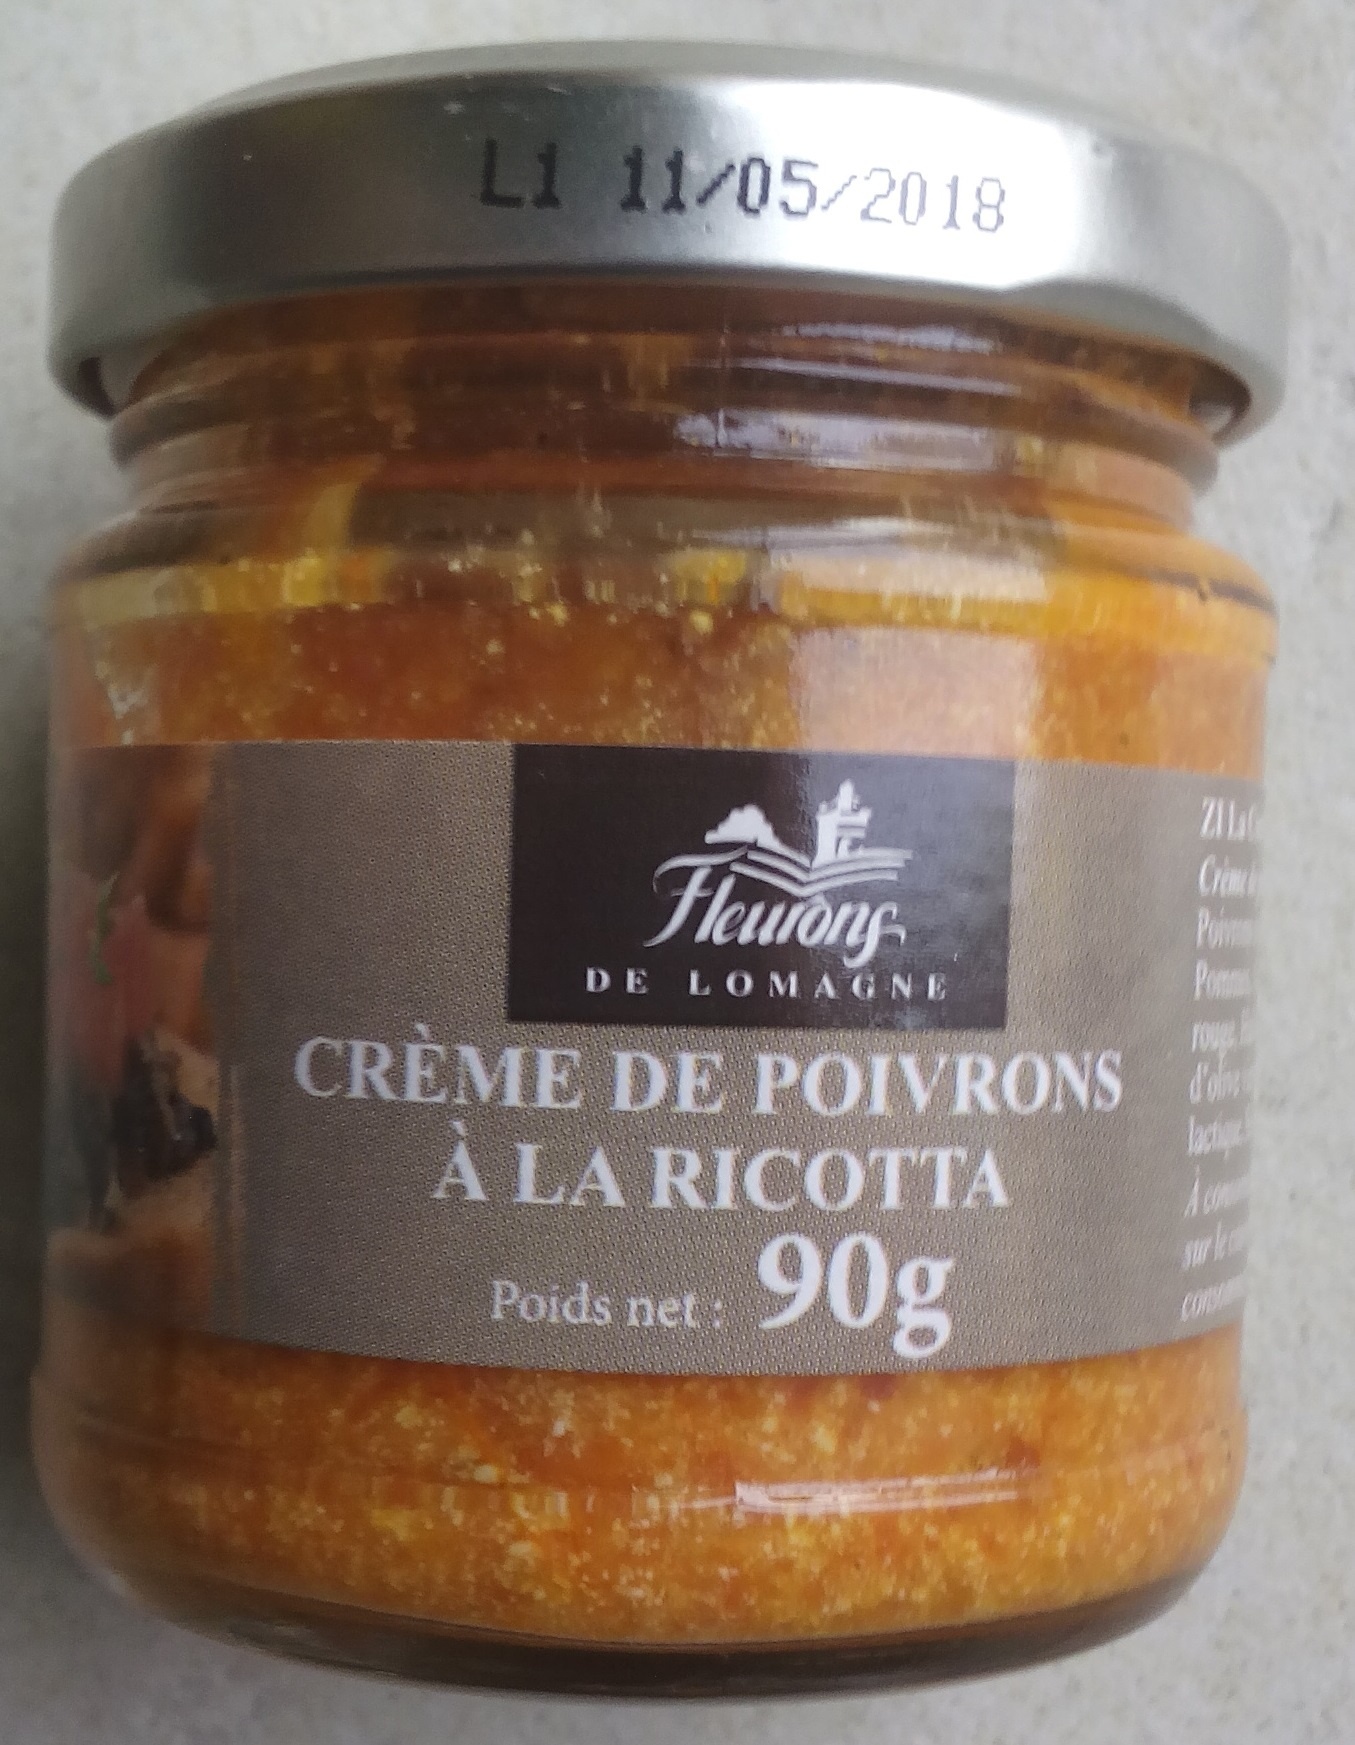 Crème de poivrons à la Ricotta - Product - fr